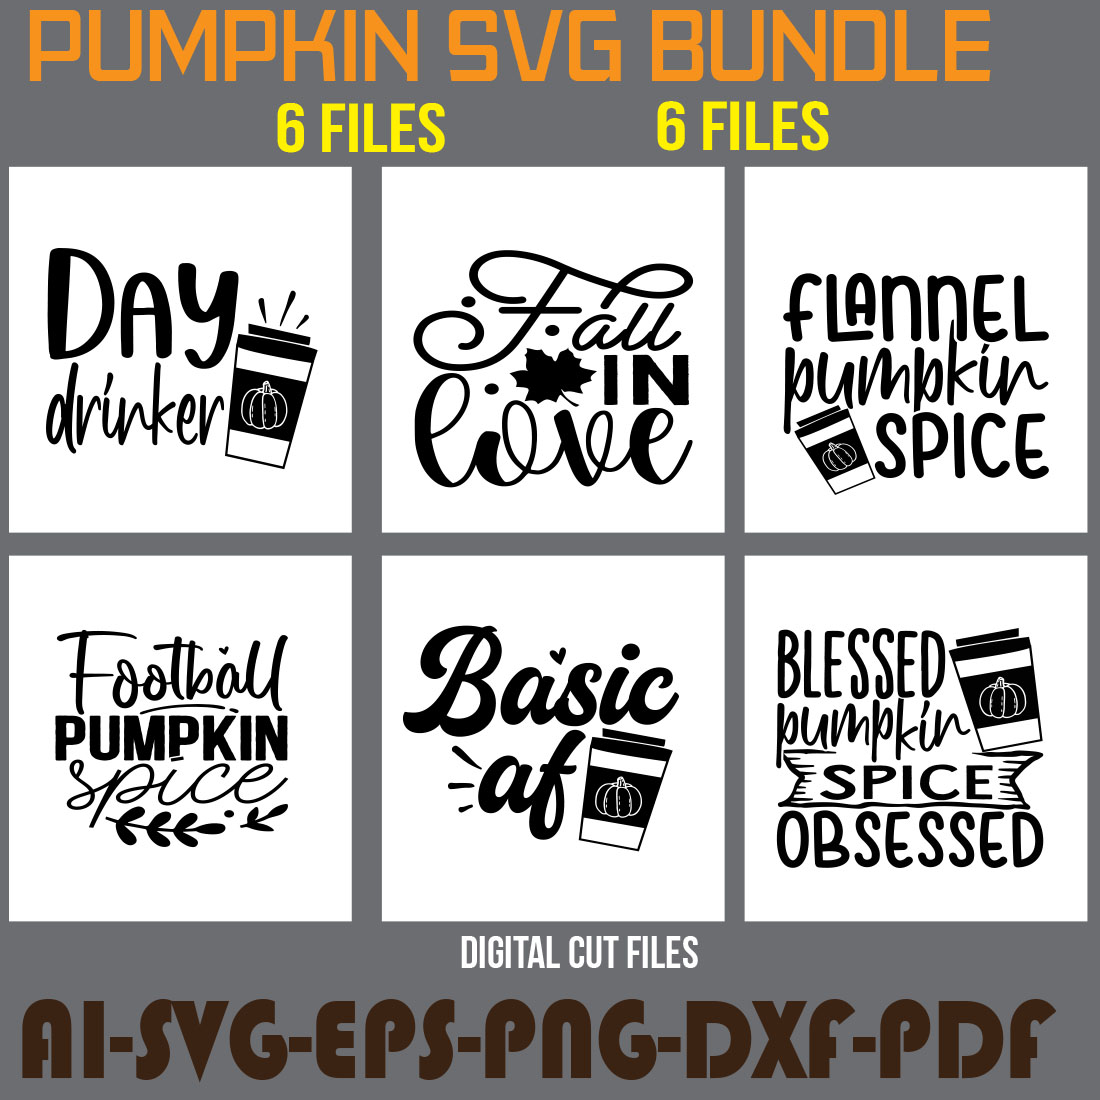 Pumpkin SVG Bundle cover image.